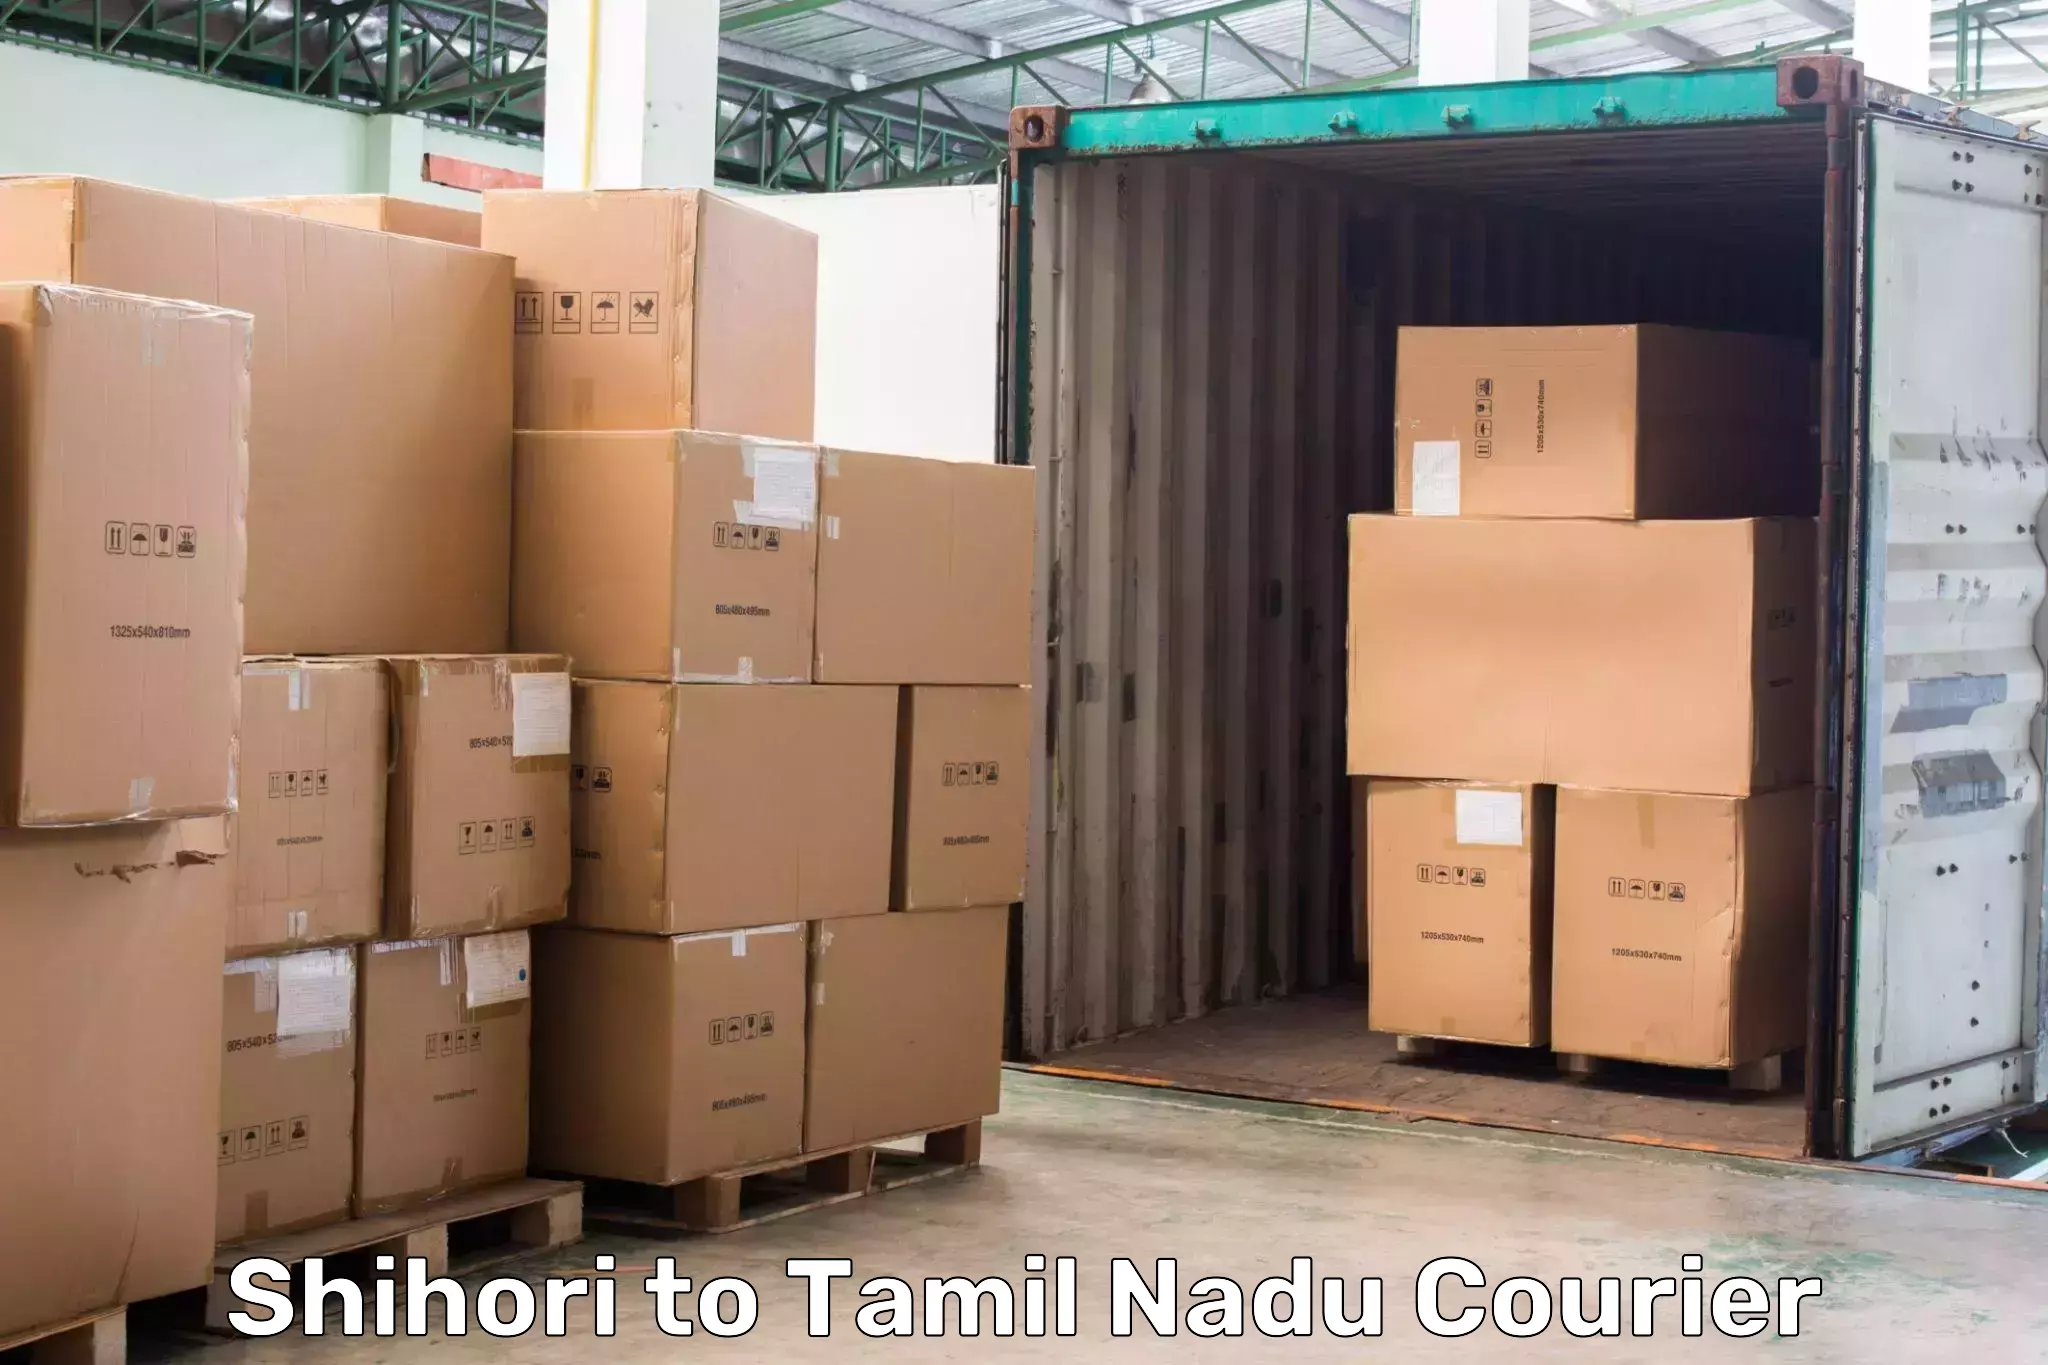 Express package handling Shihori to Tamil Nadu